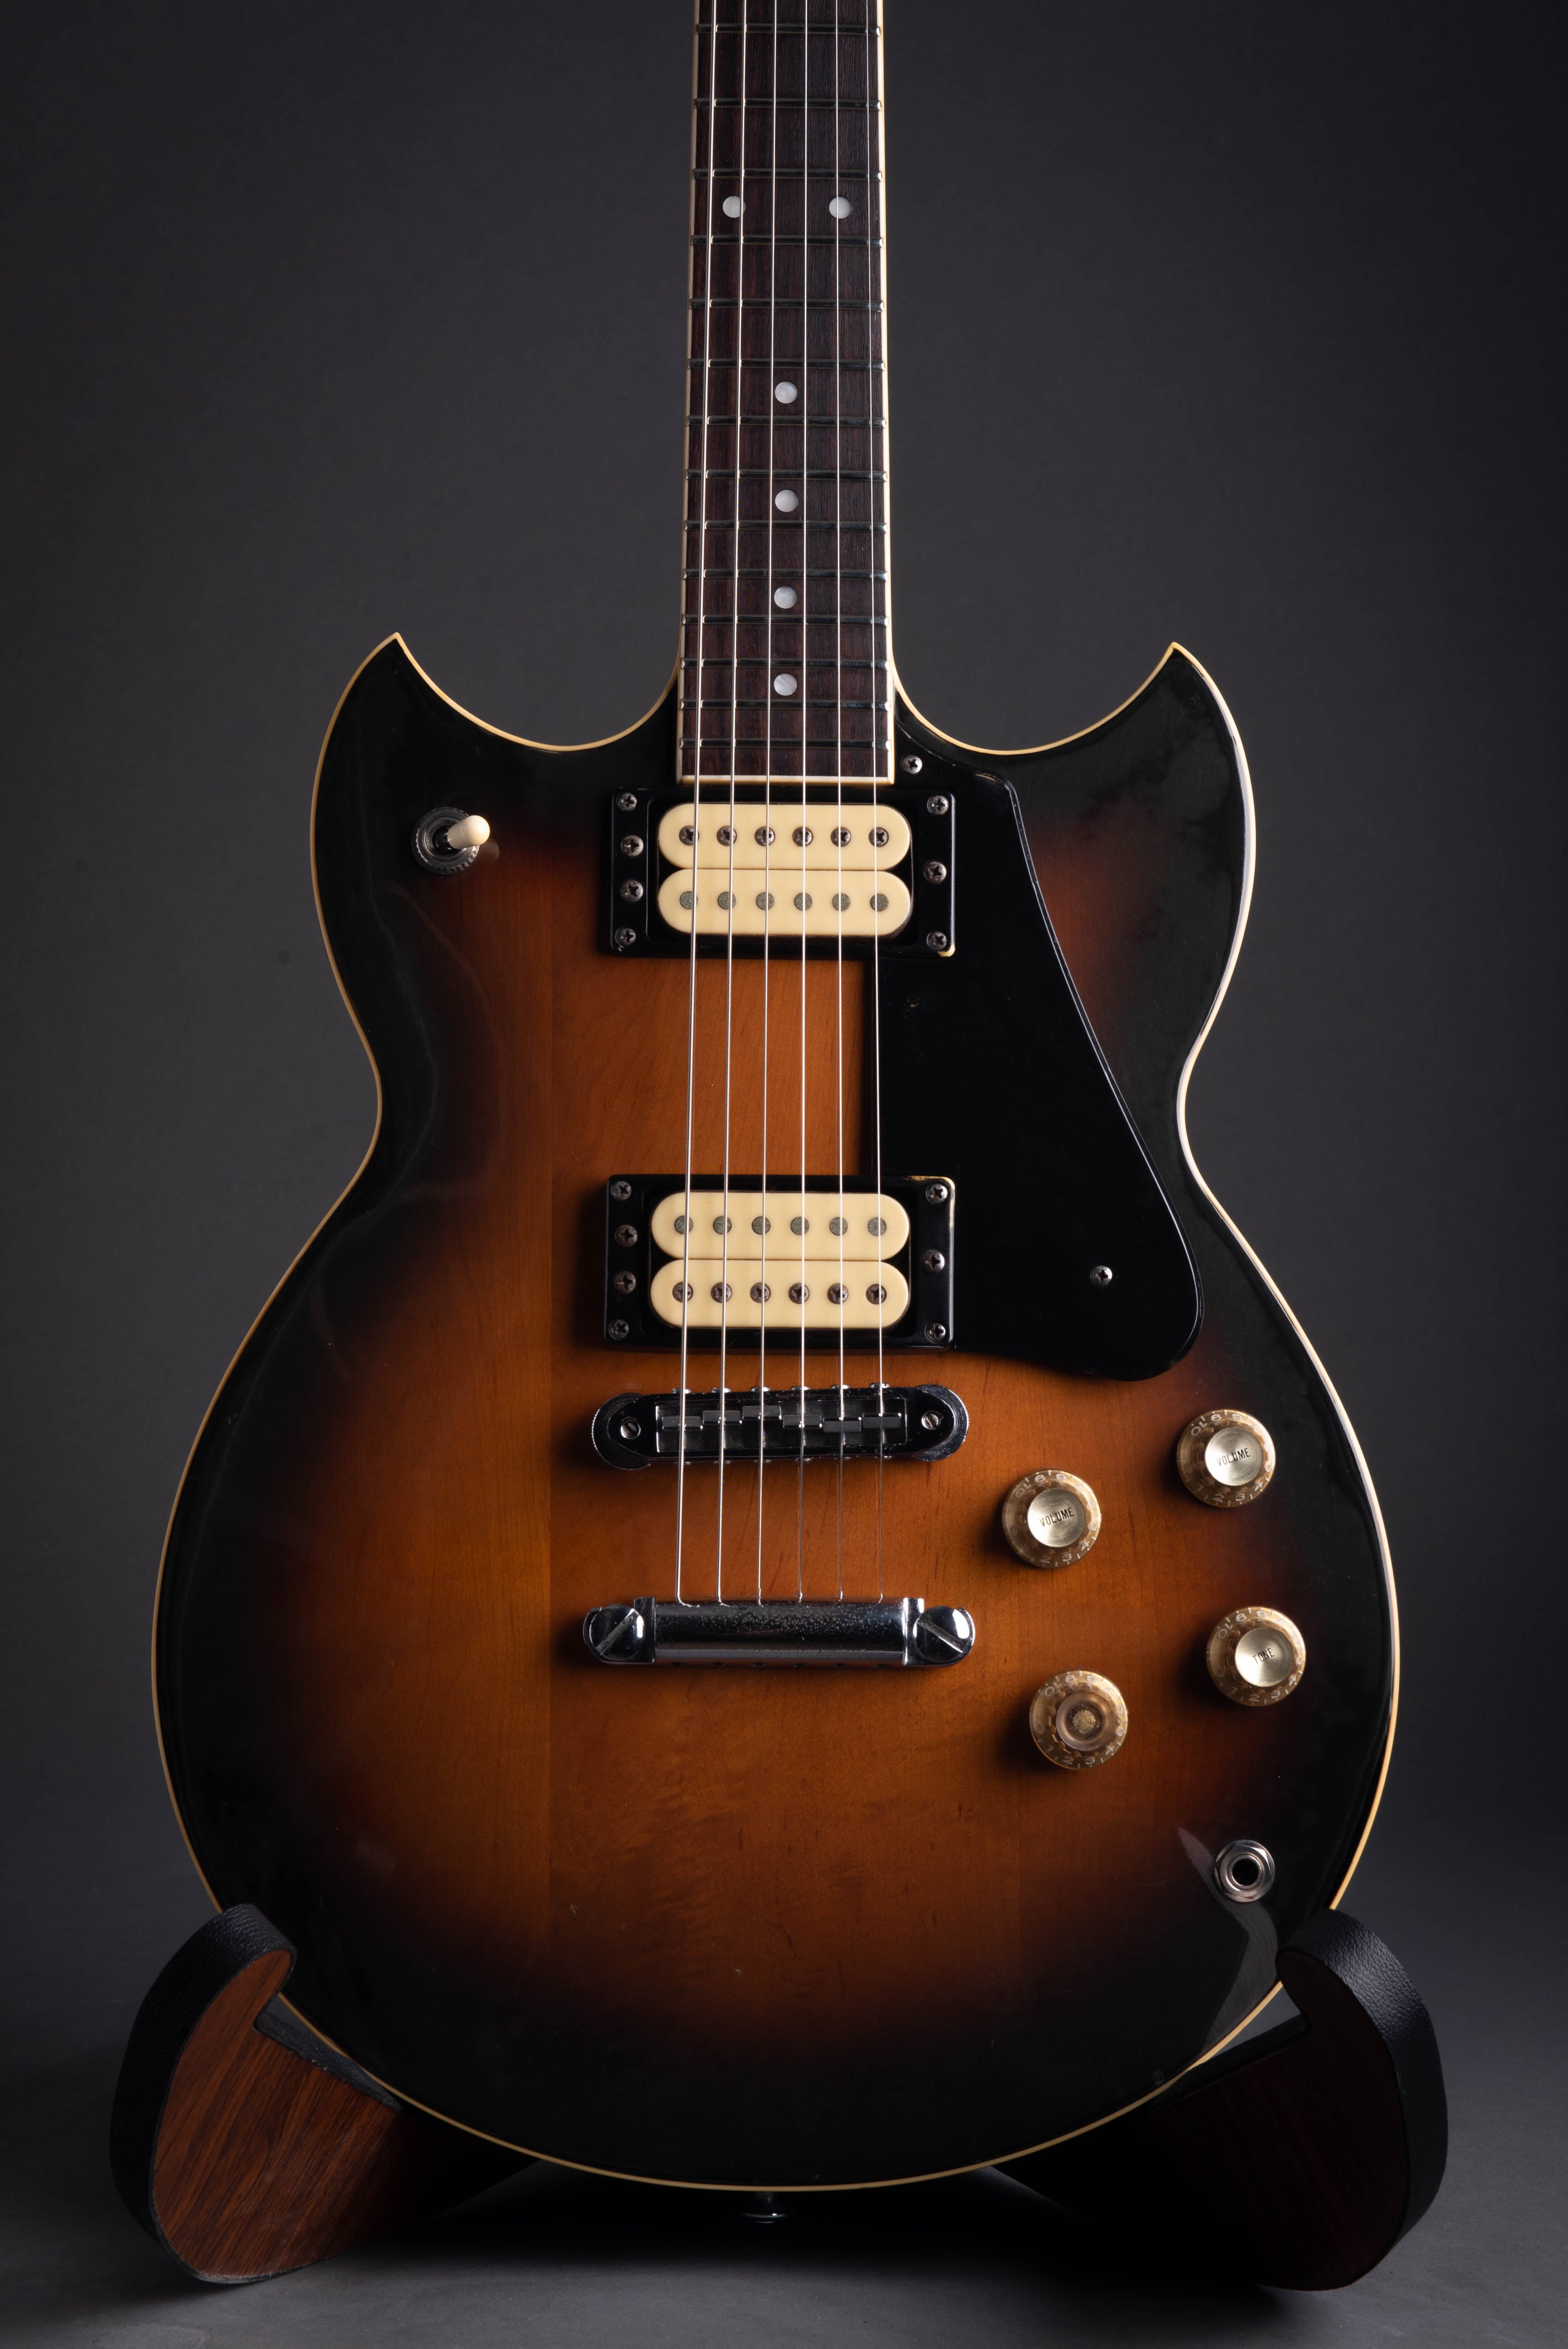 1981 Yamaha SG800s Electric Guitar